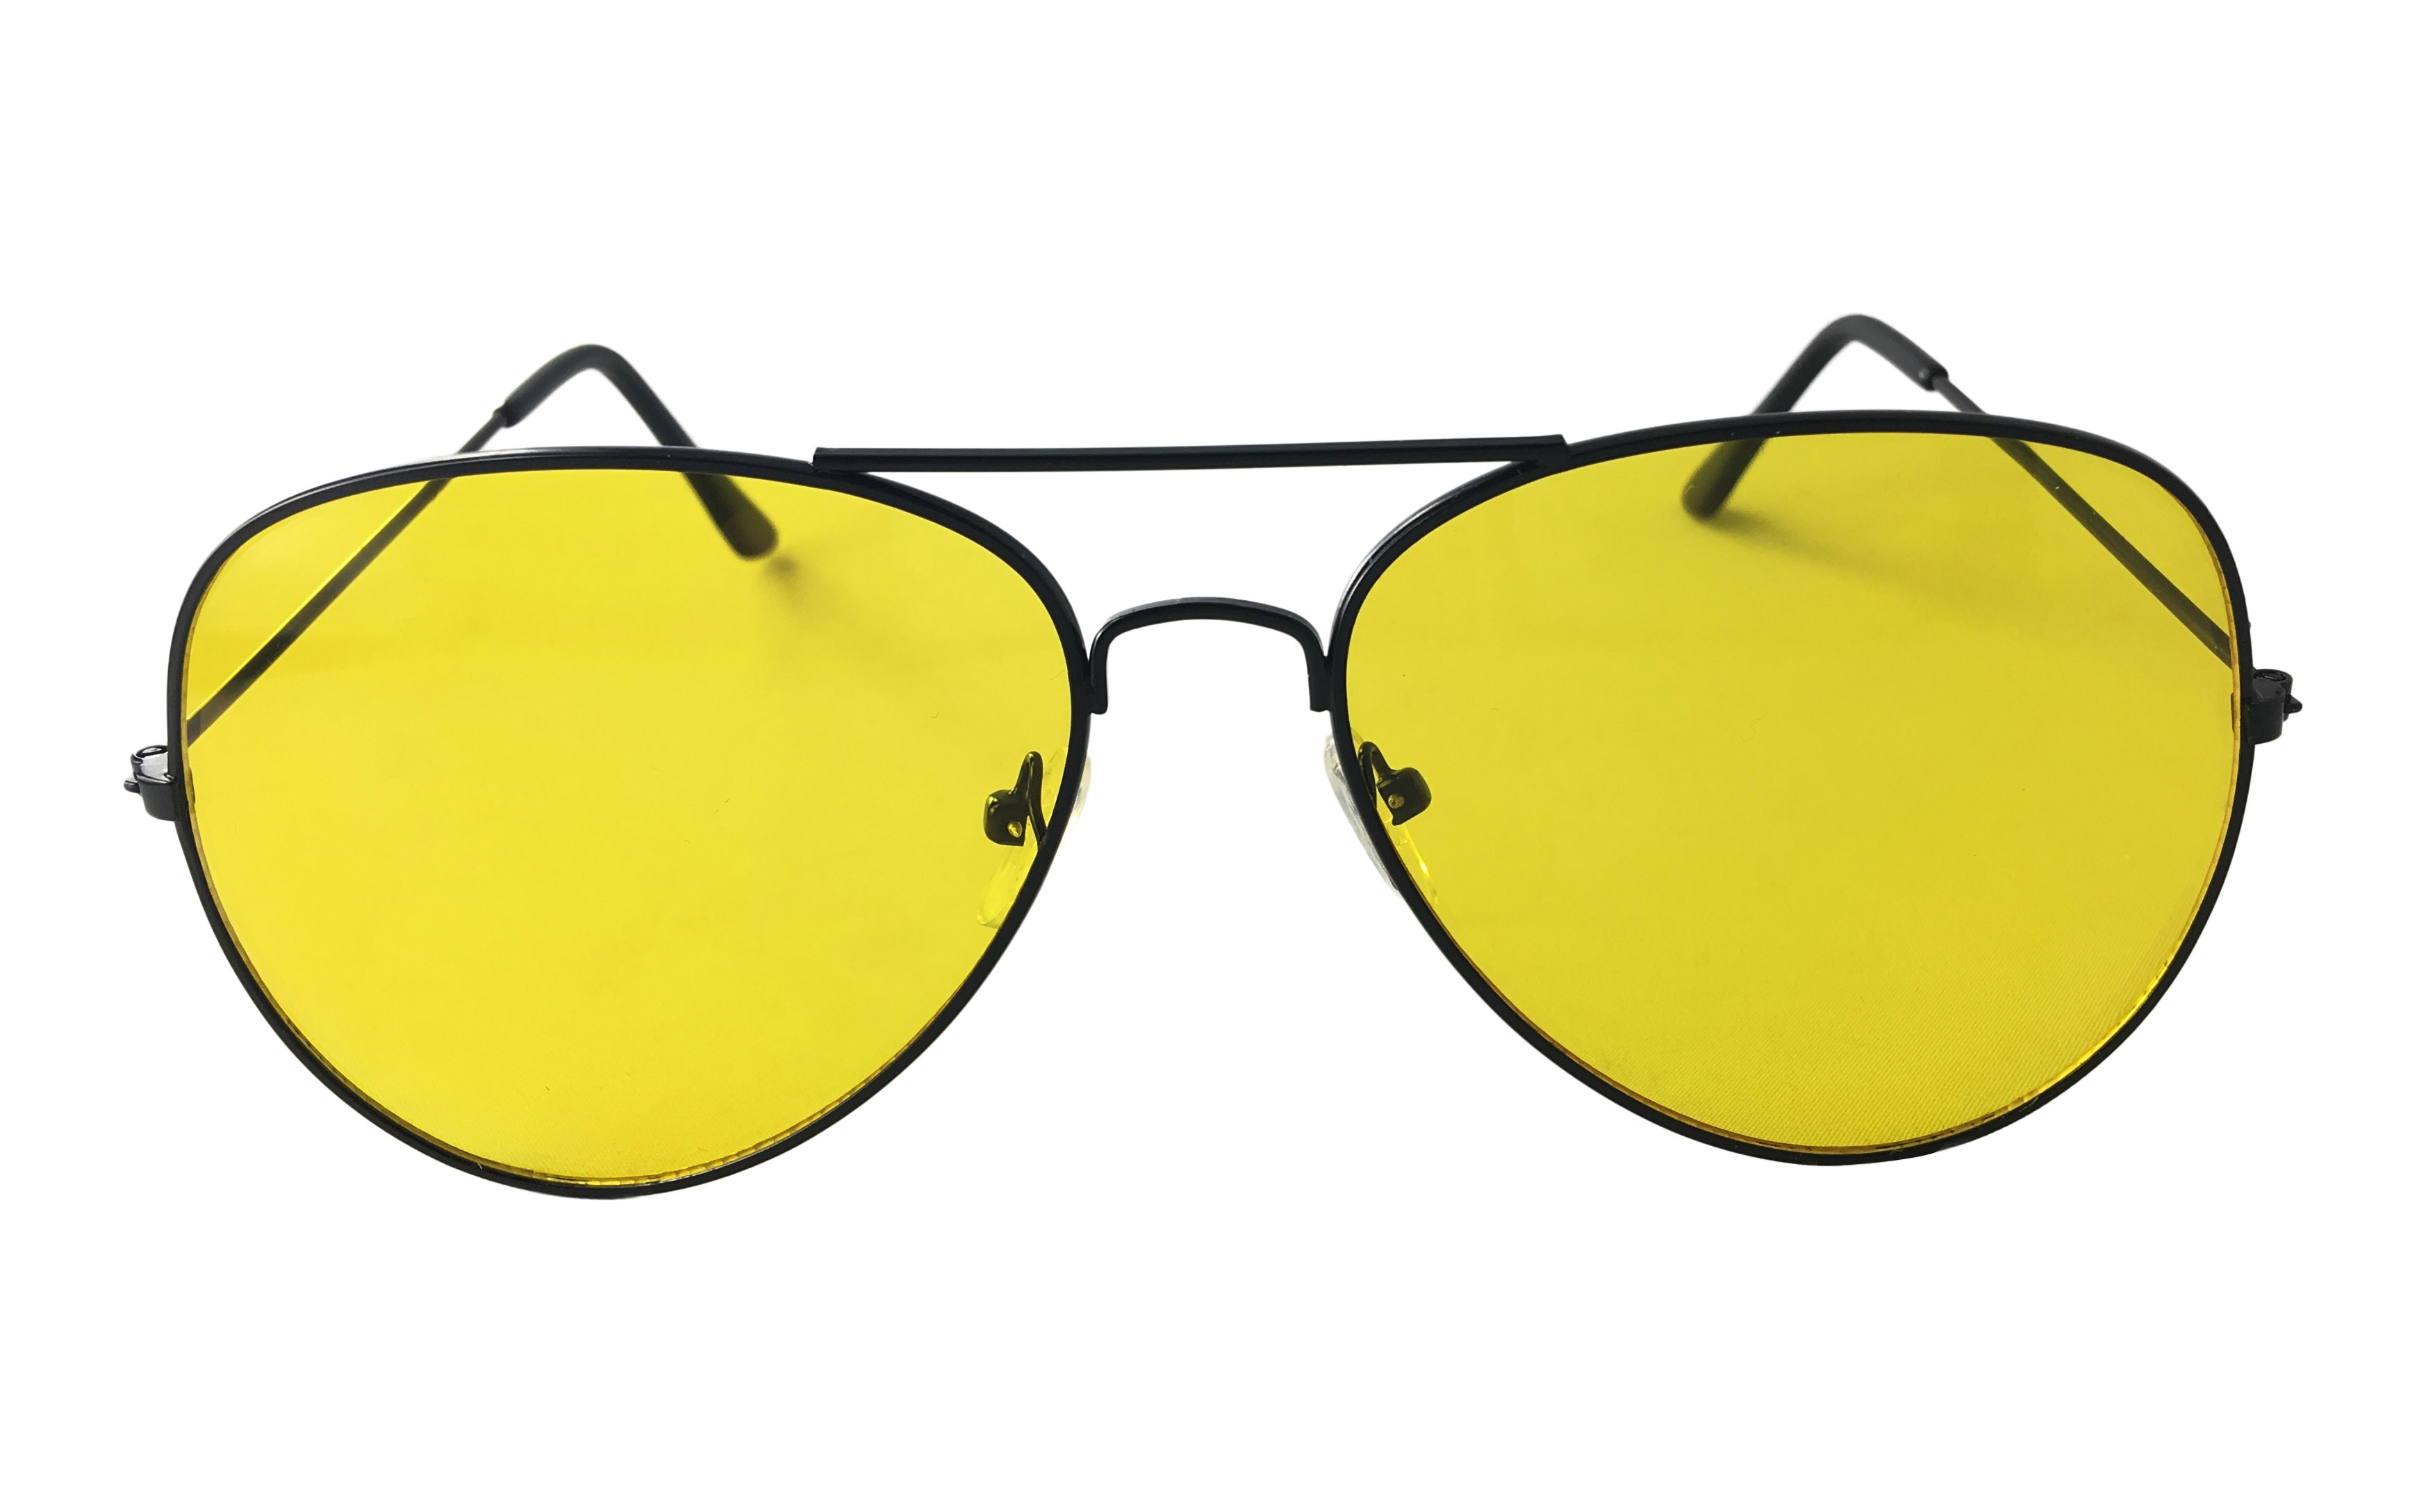 Aviator solbrille med gult brilleglas. Perfekt til kørebrille især om natten. Kendt som nat brille, velegnet til natkørsel | solbriller_maend